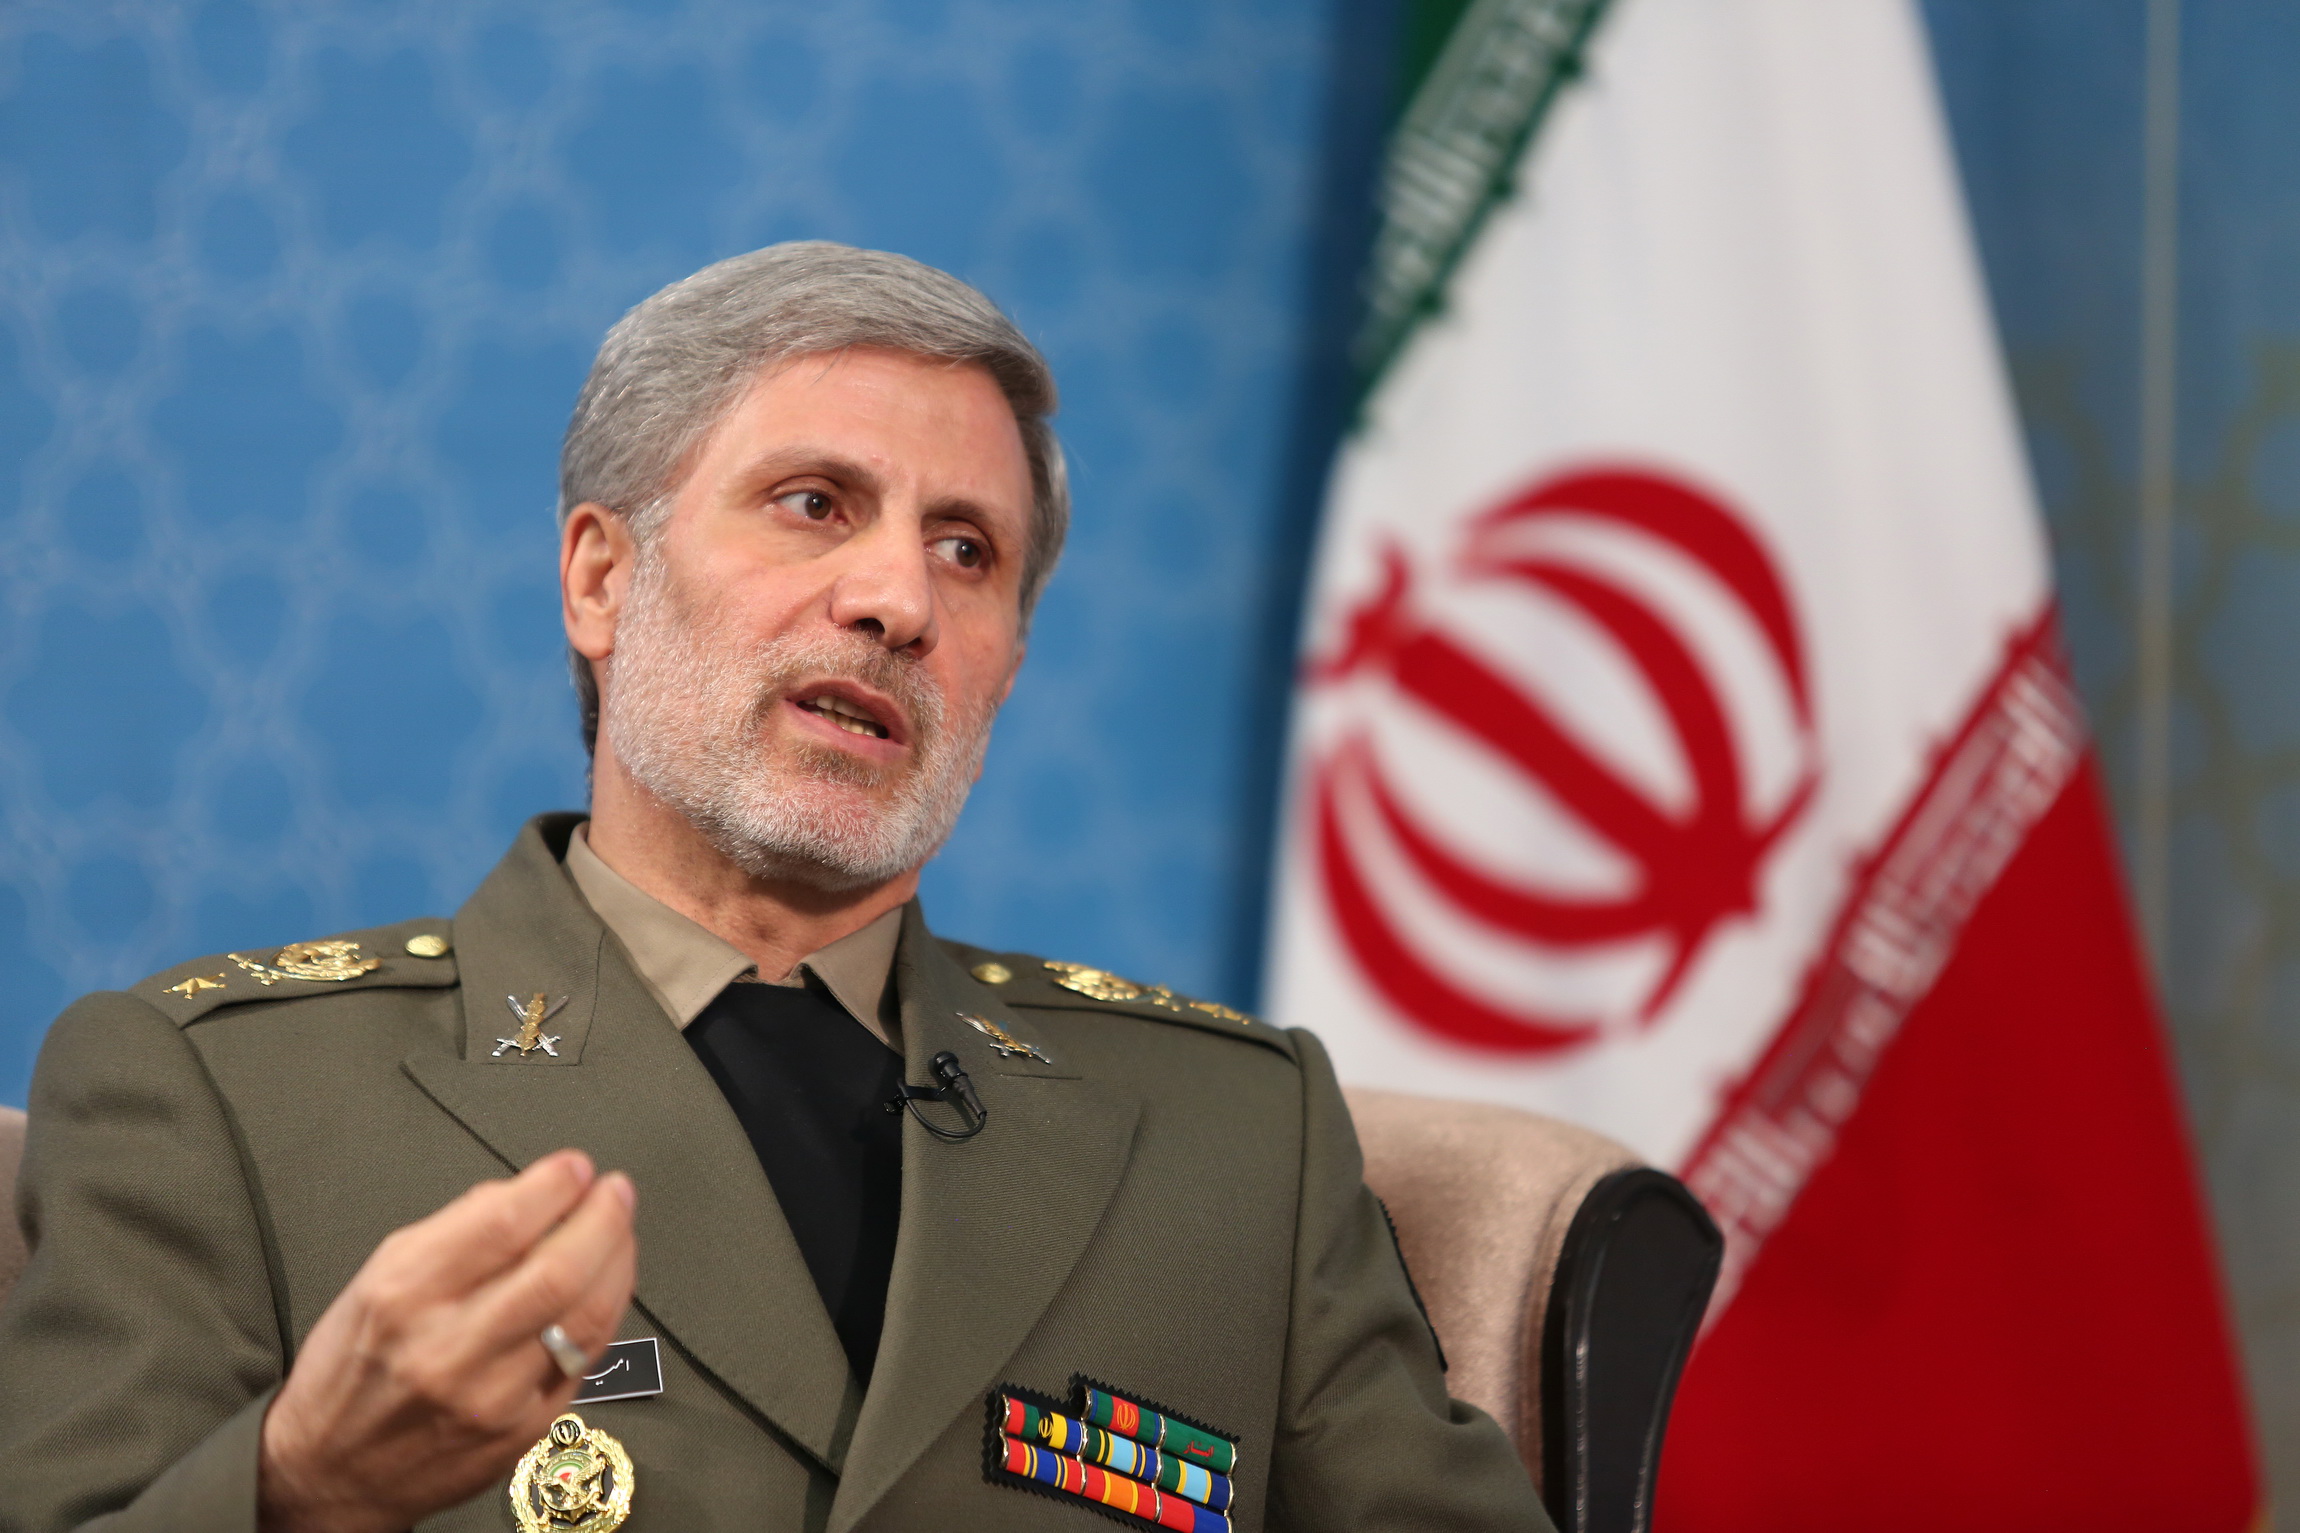 وزیر دفاع:تا ۳ روز دیگر از یک جنگنده جدید رونمایی می کنیم/پاسخ قاطع ایران به تهدید کنندگان امنیت